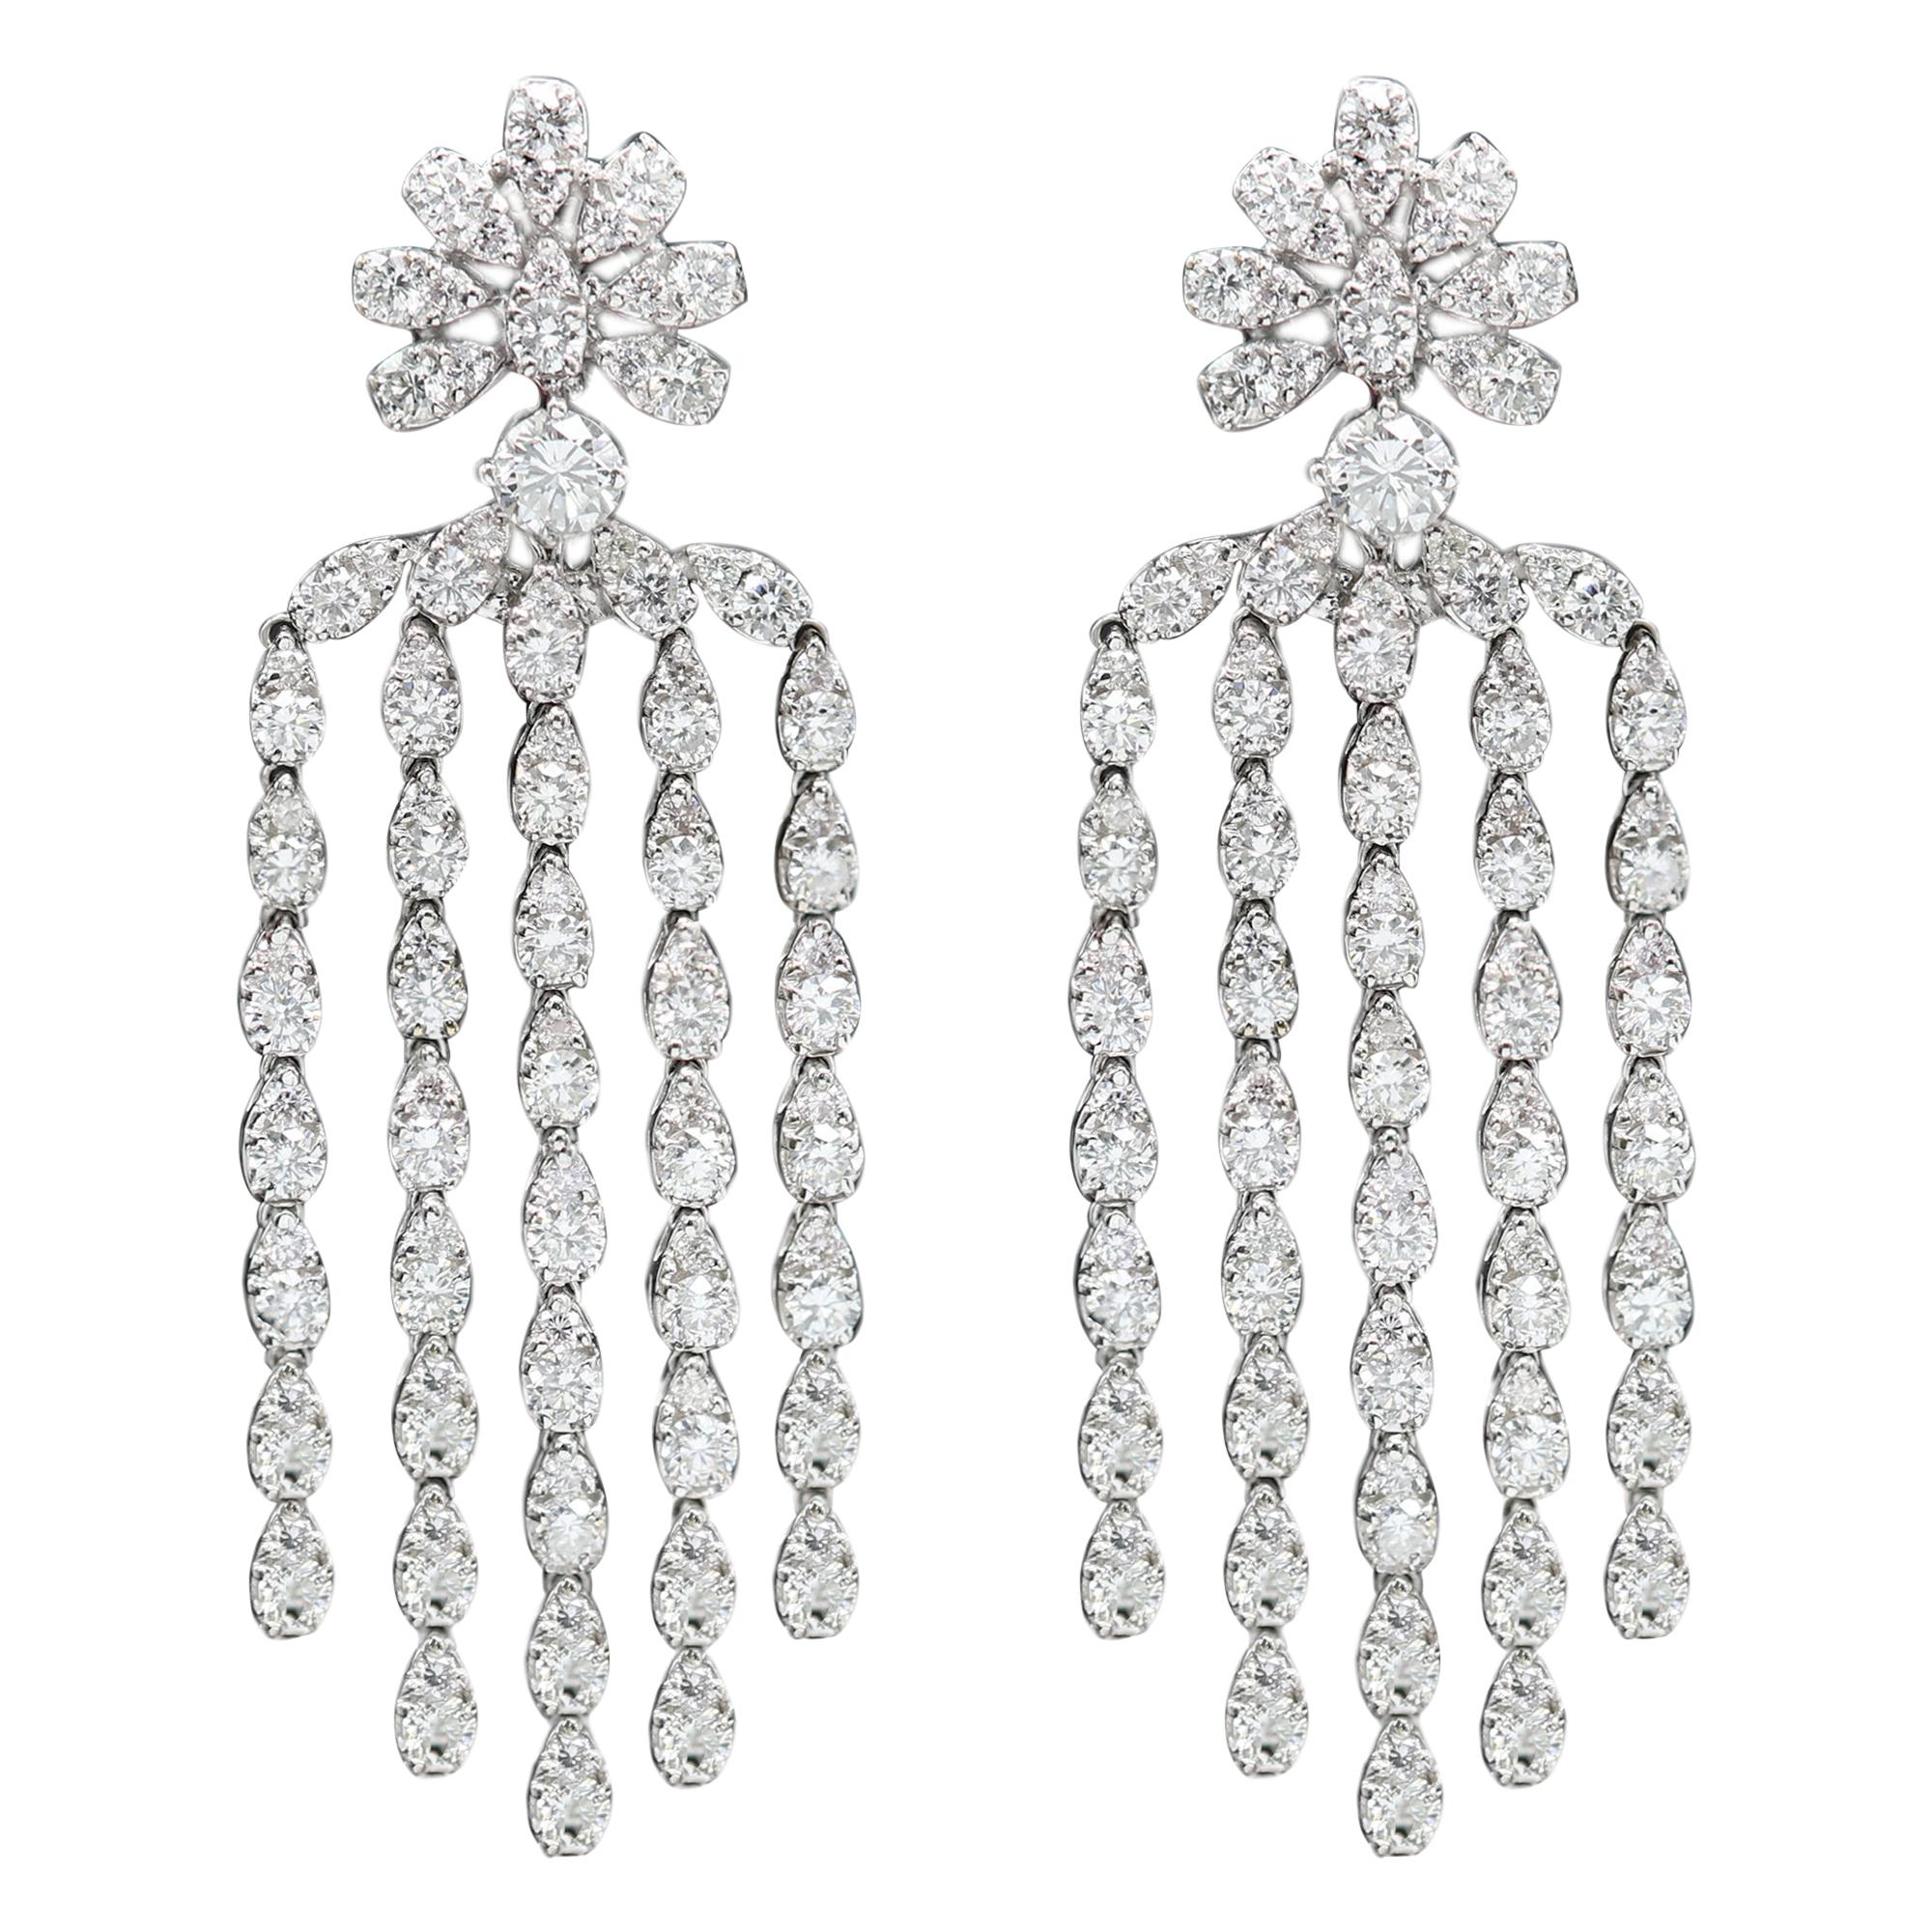 Diamond Dangling Earrings 18 Karat White Gold Chandelier Earrings 2' Inch Dangle